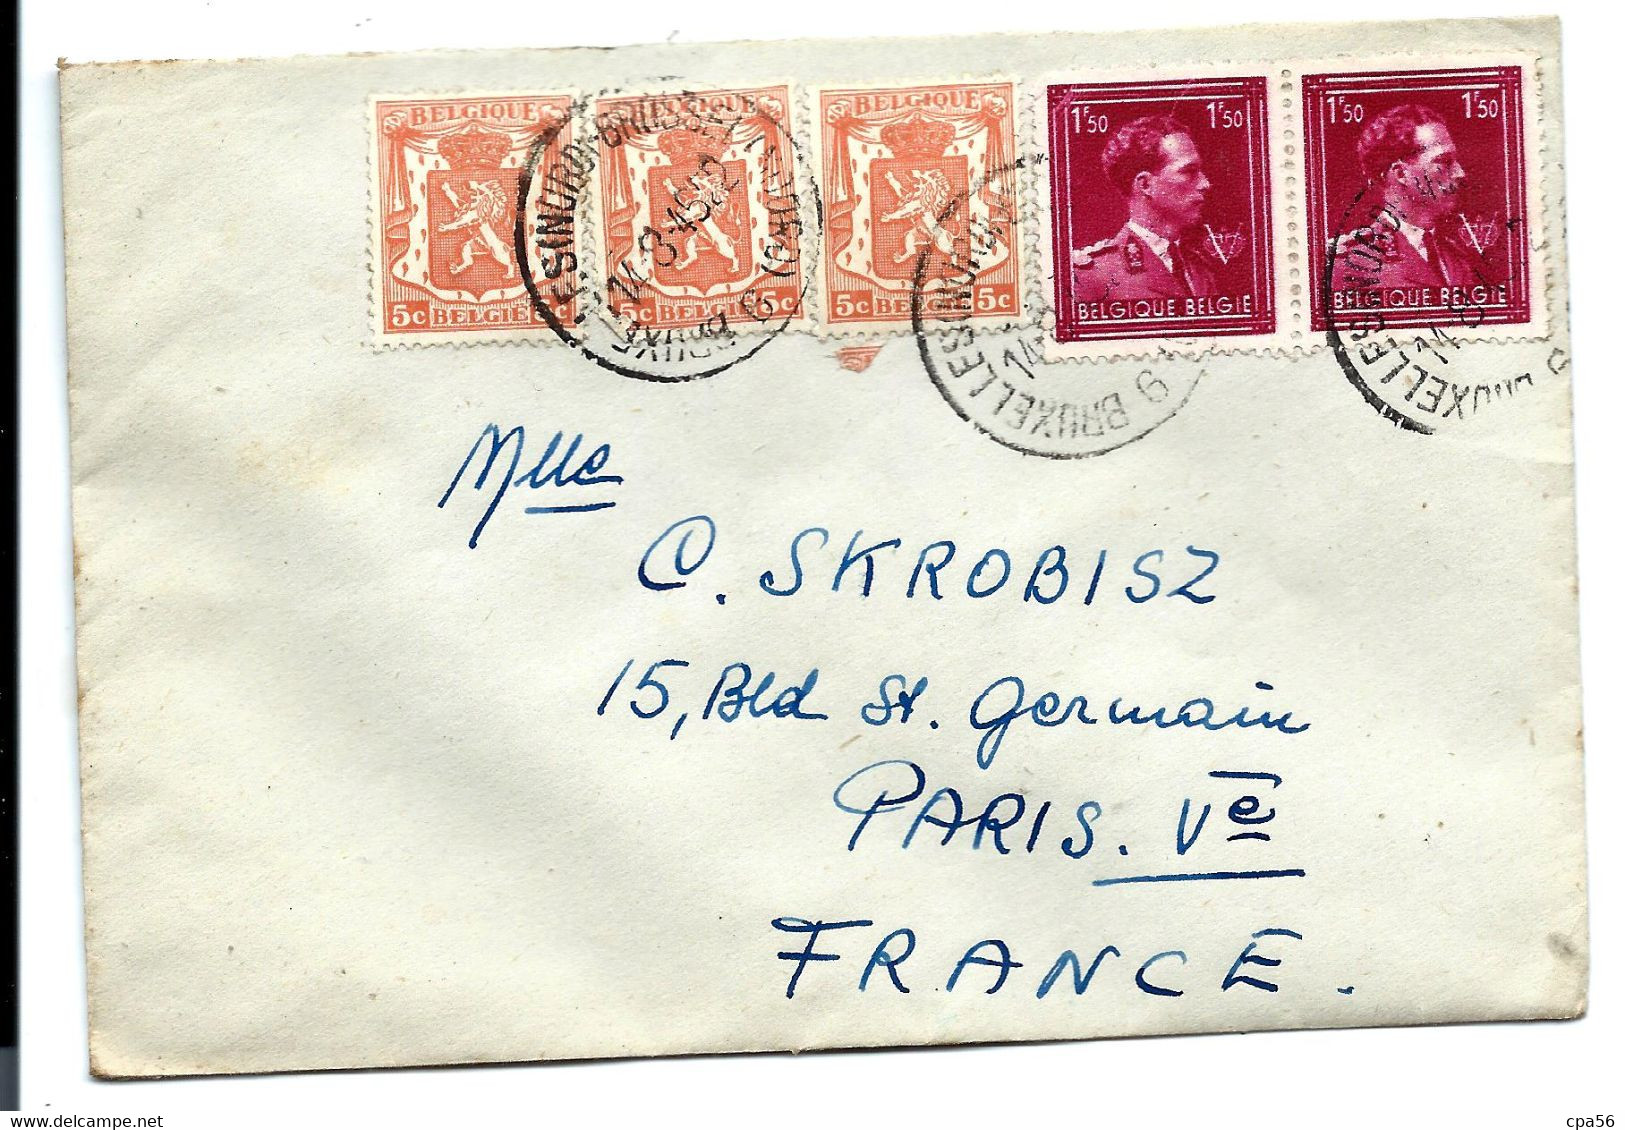 Affranchissement Composé à 3F15 - Sur Enveloppe - 1935-1949 Small Seal Of The State